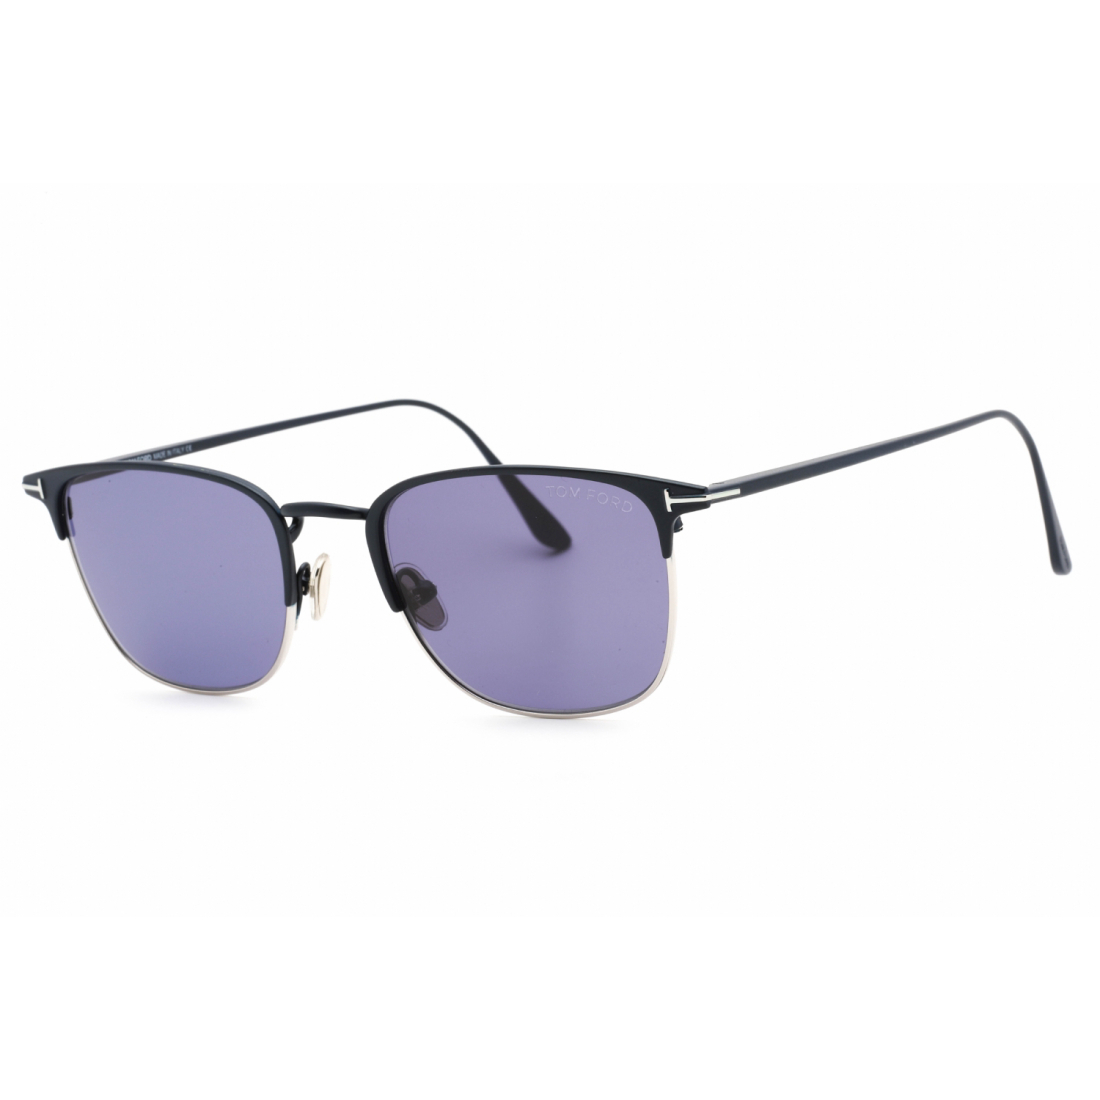 Men's 'FT0851' Sunglasses